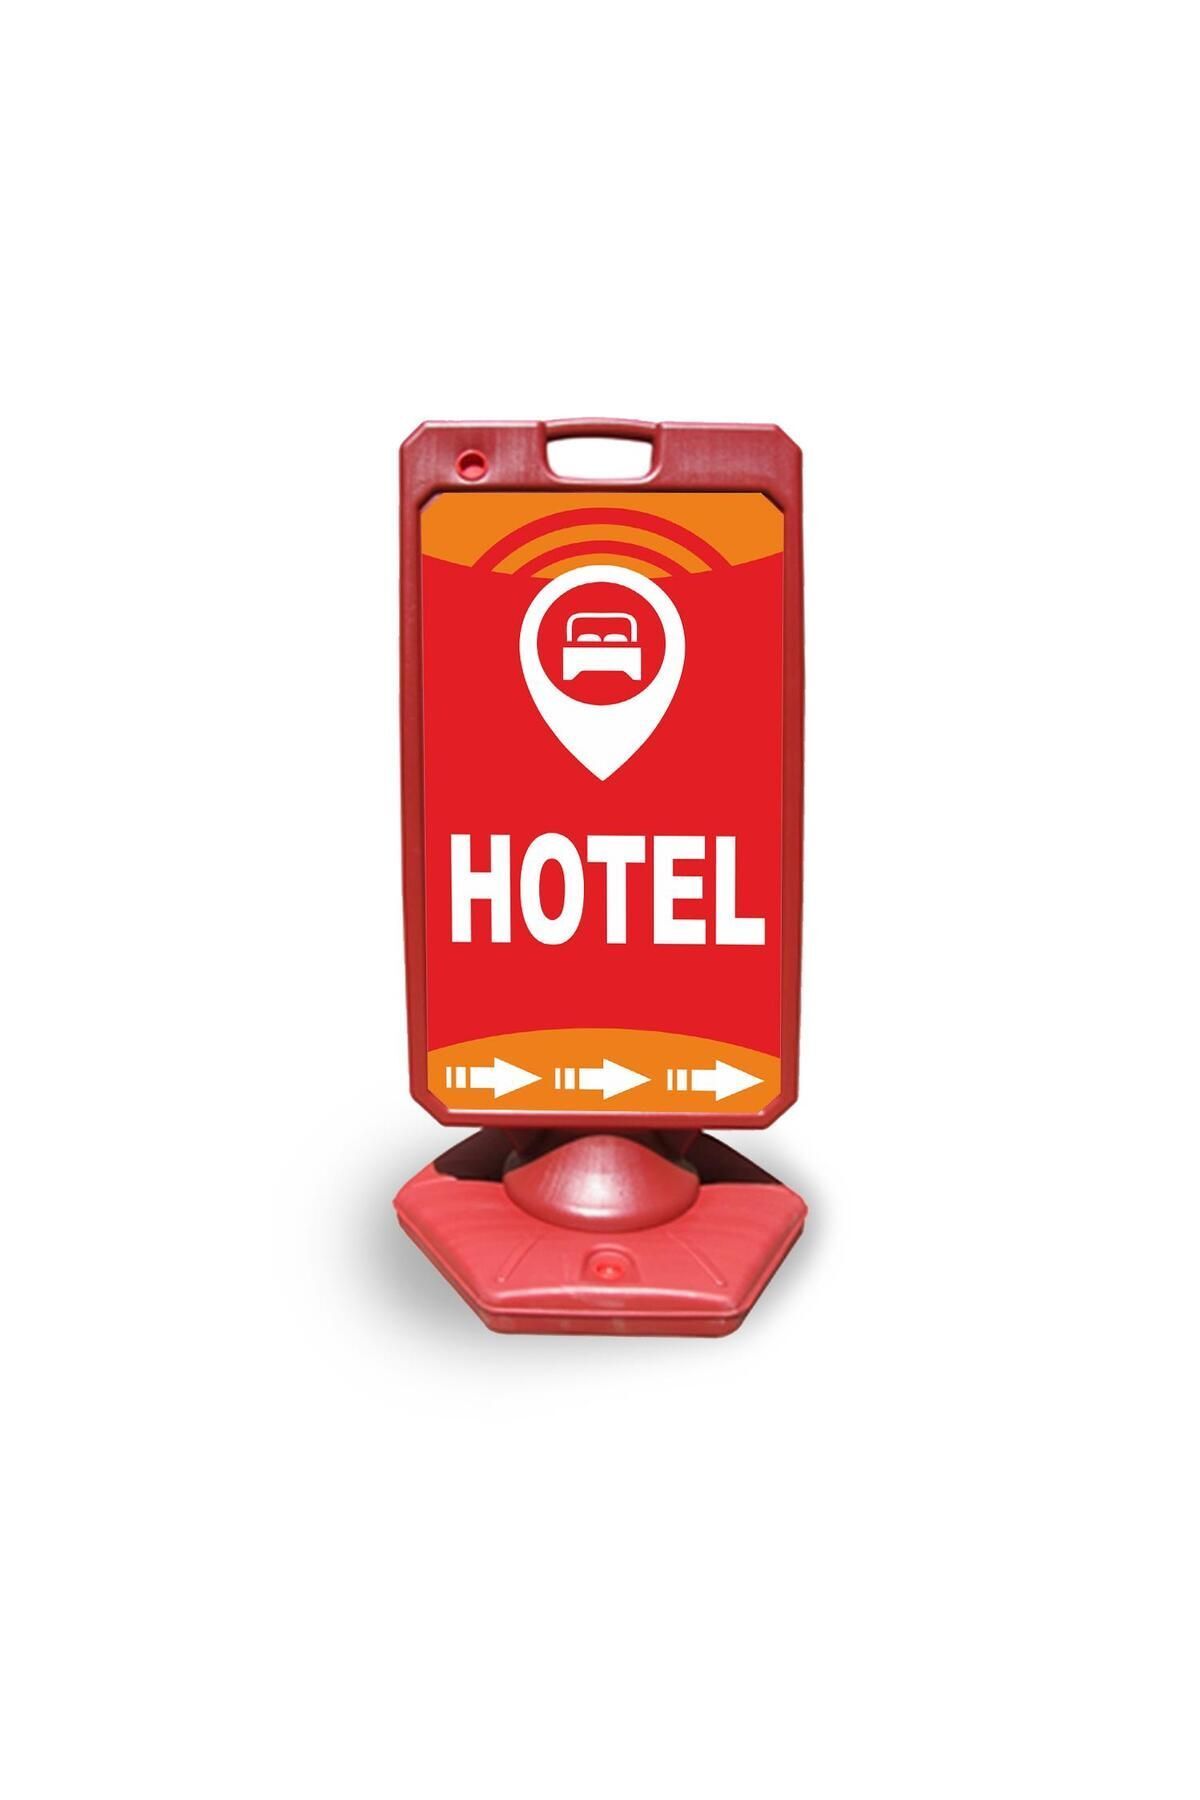 Reklamediyoruz Hotel Reklam Ve Yönlendirme Uyari Dubasi A Tabela Kırmızı